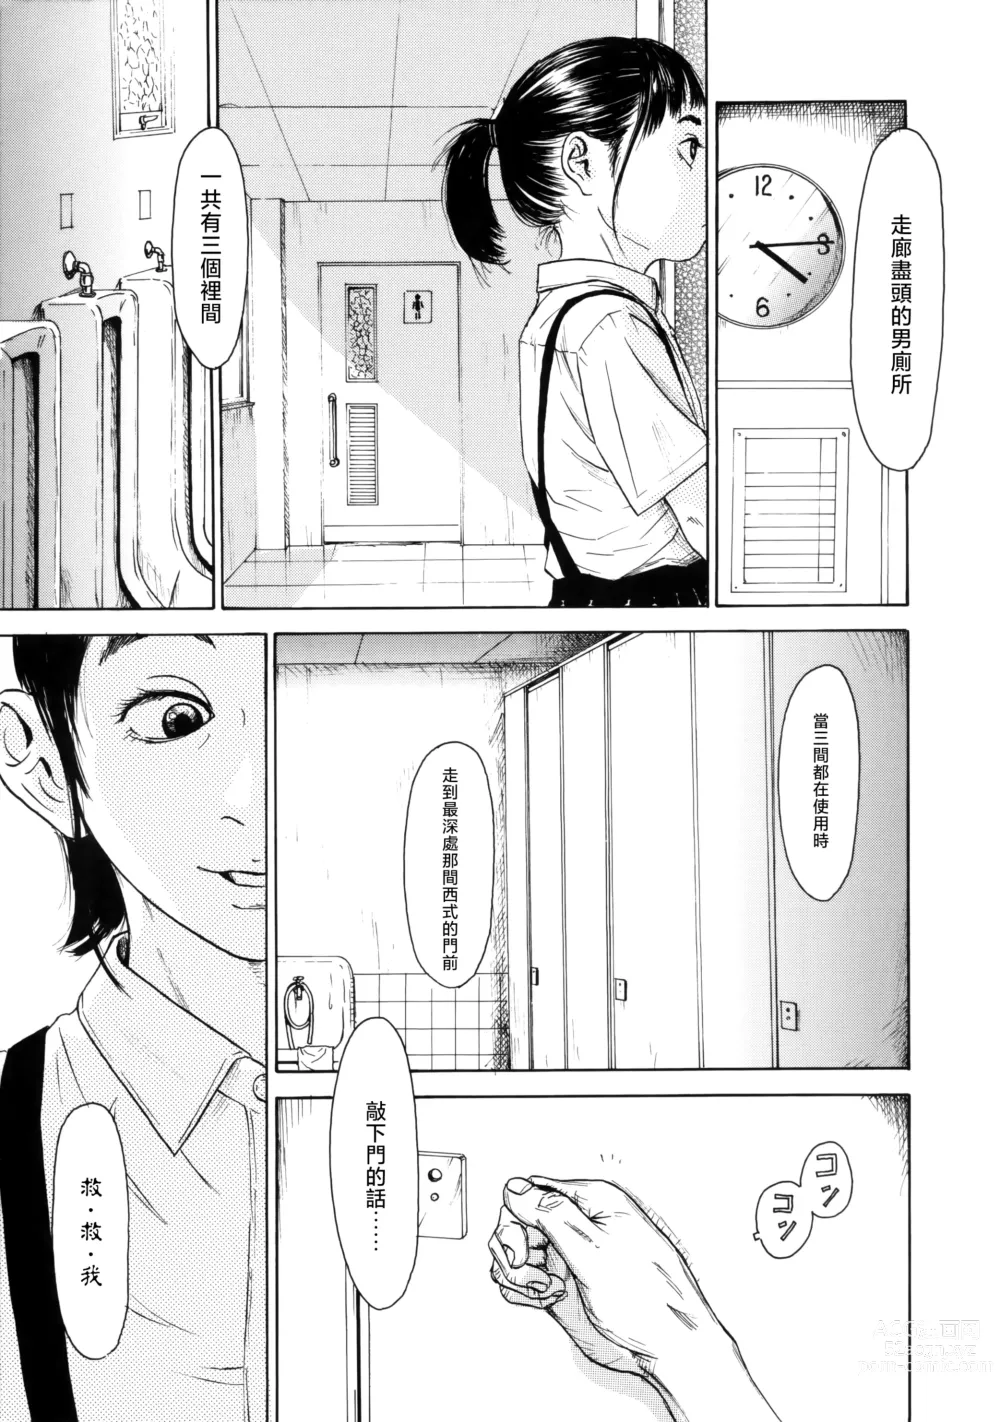 Page 7 of manga Hanako to Tarou no Natsuyasumi